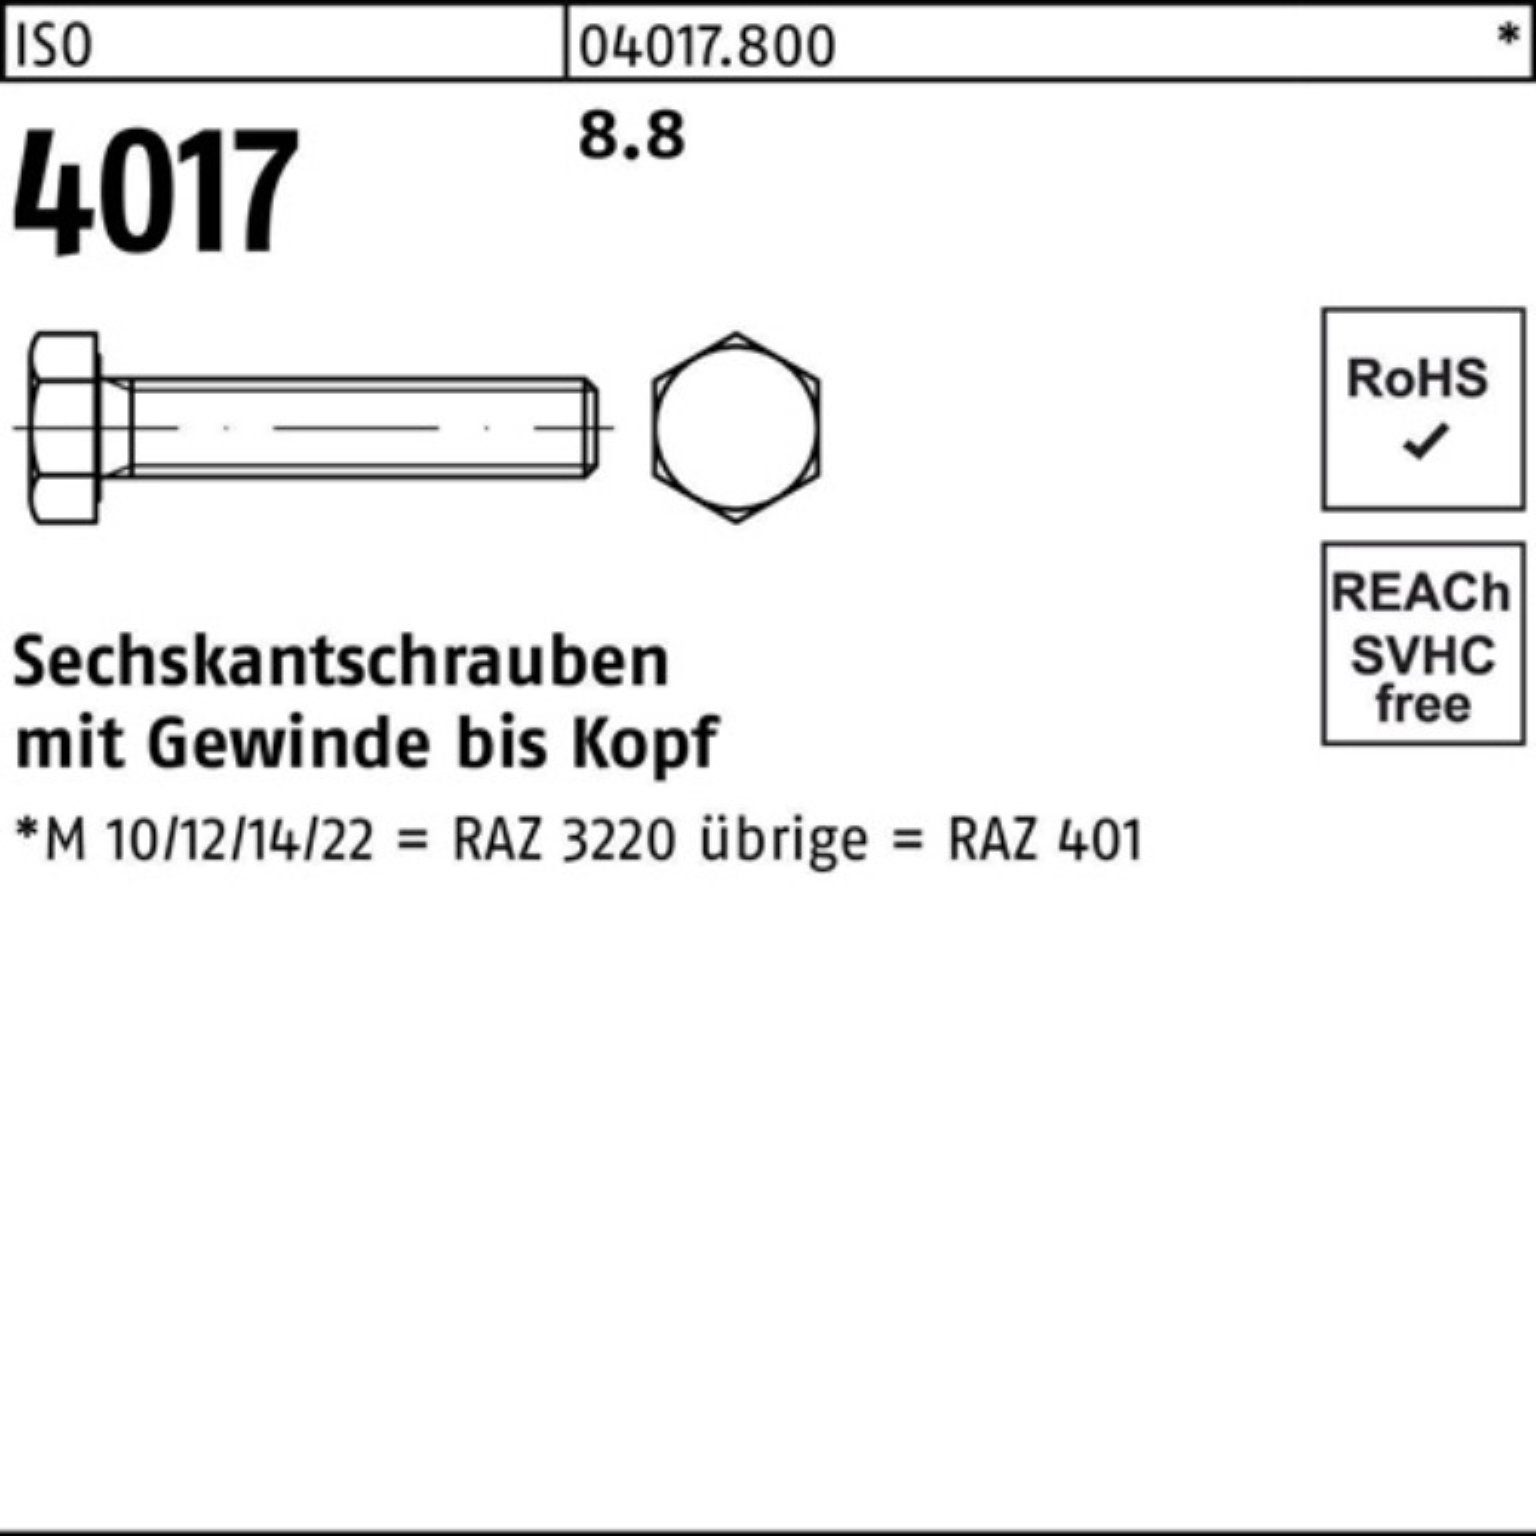 Sechskantschraube 1 VG Stück ISO Bufab Pack ISO 8.8 M42x 4017 401 220 100er Sechskantschraube